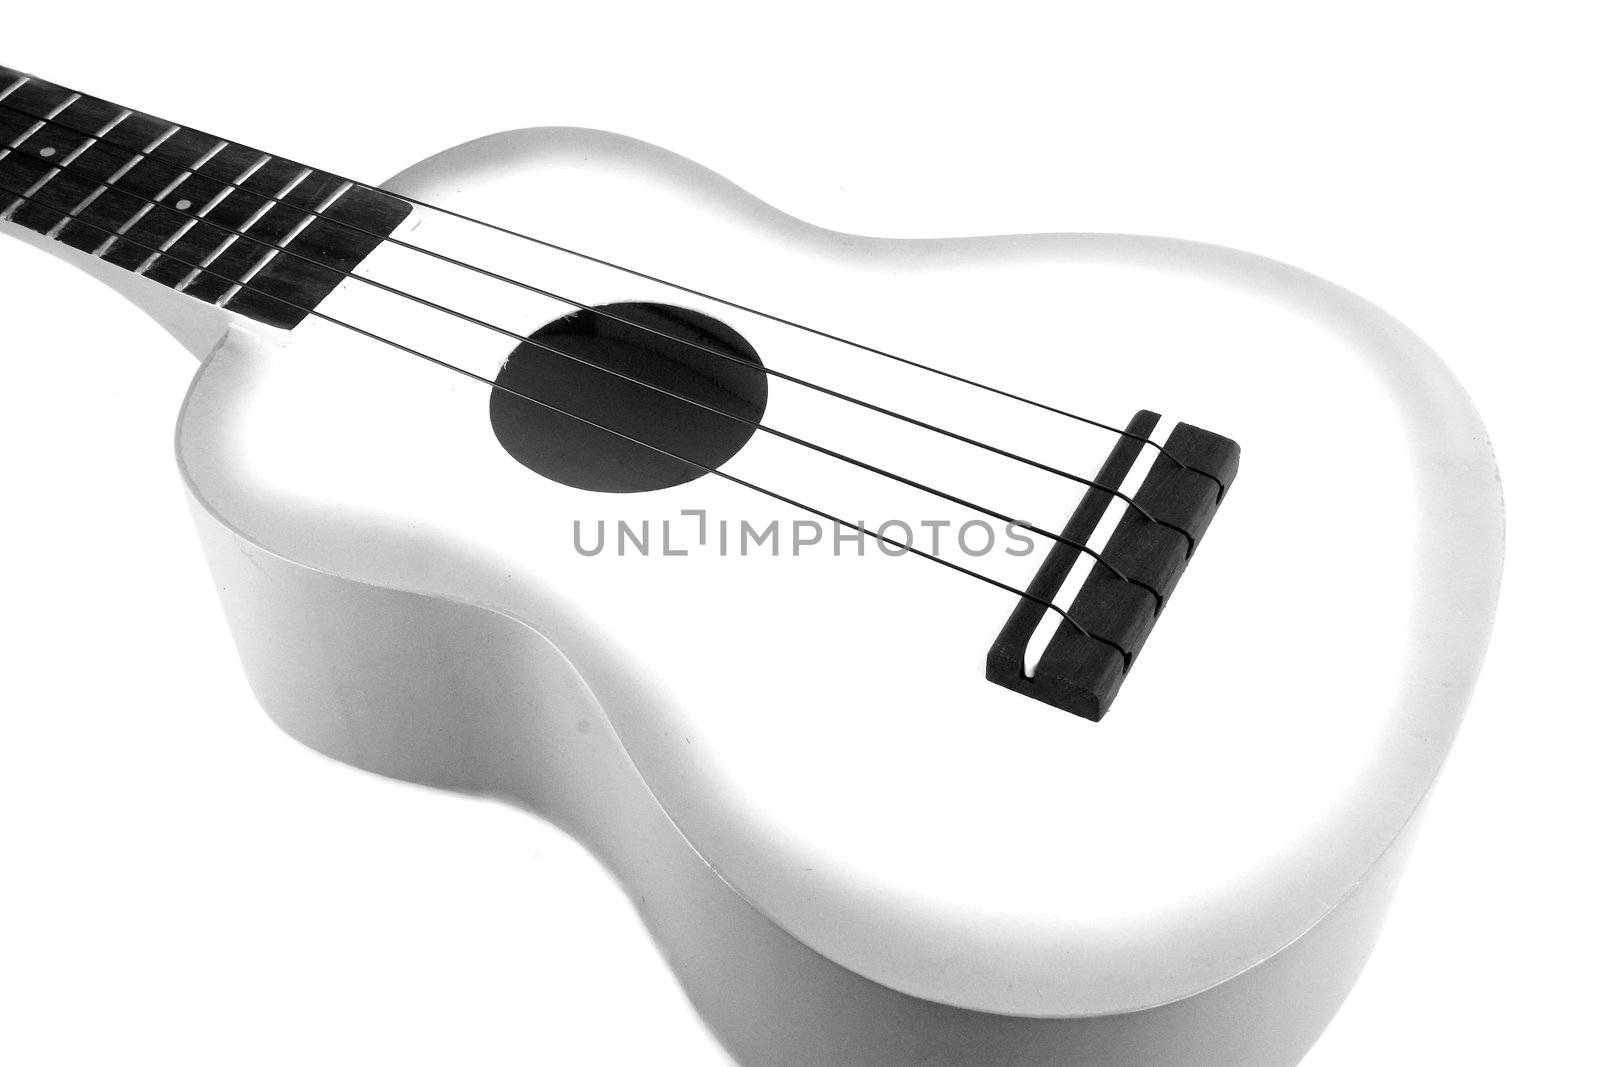 Ukulele guitar on white background